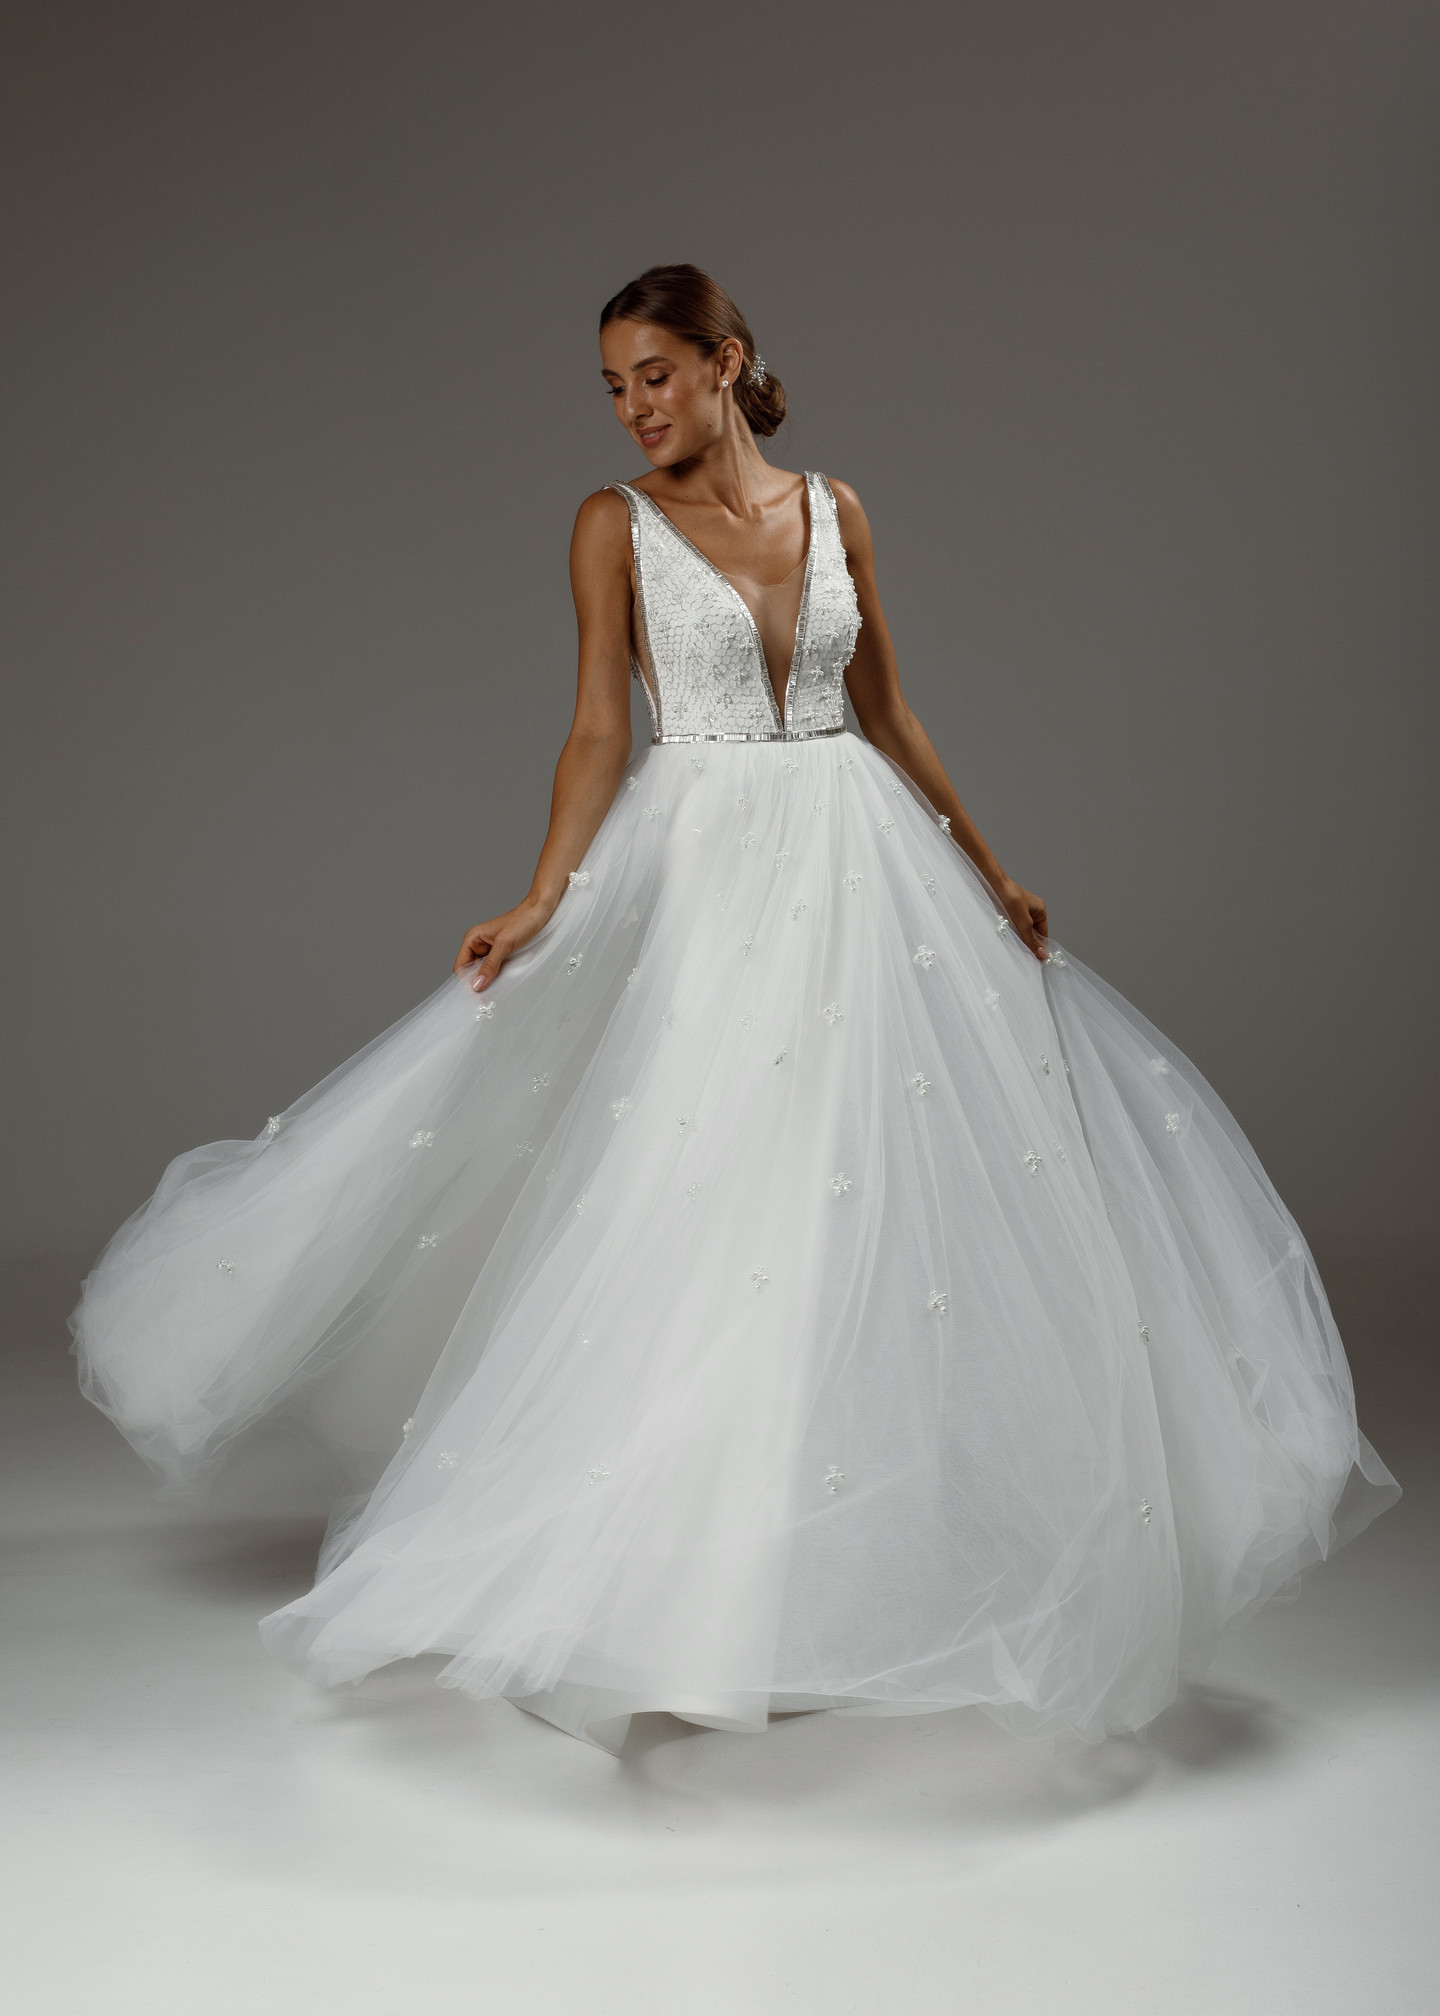 Платье Стефани, 2020, одежда, платье, свадебное, молочно-белый, сетка, вышивка, А-силуэт